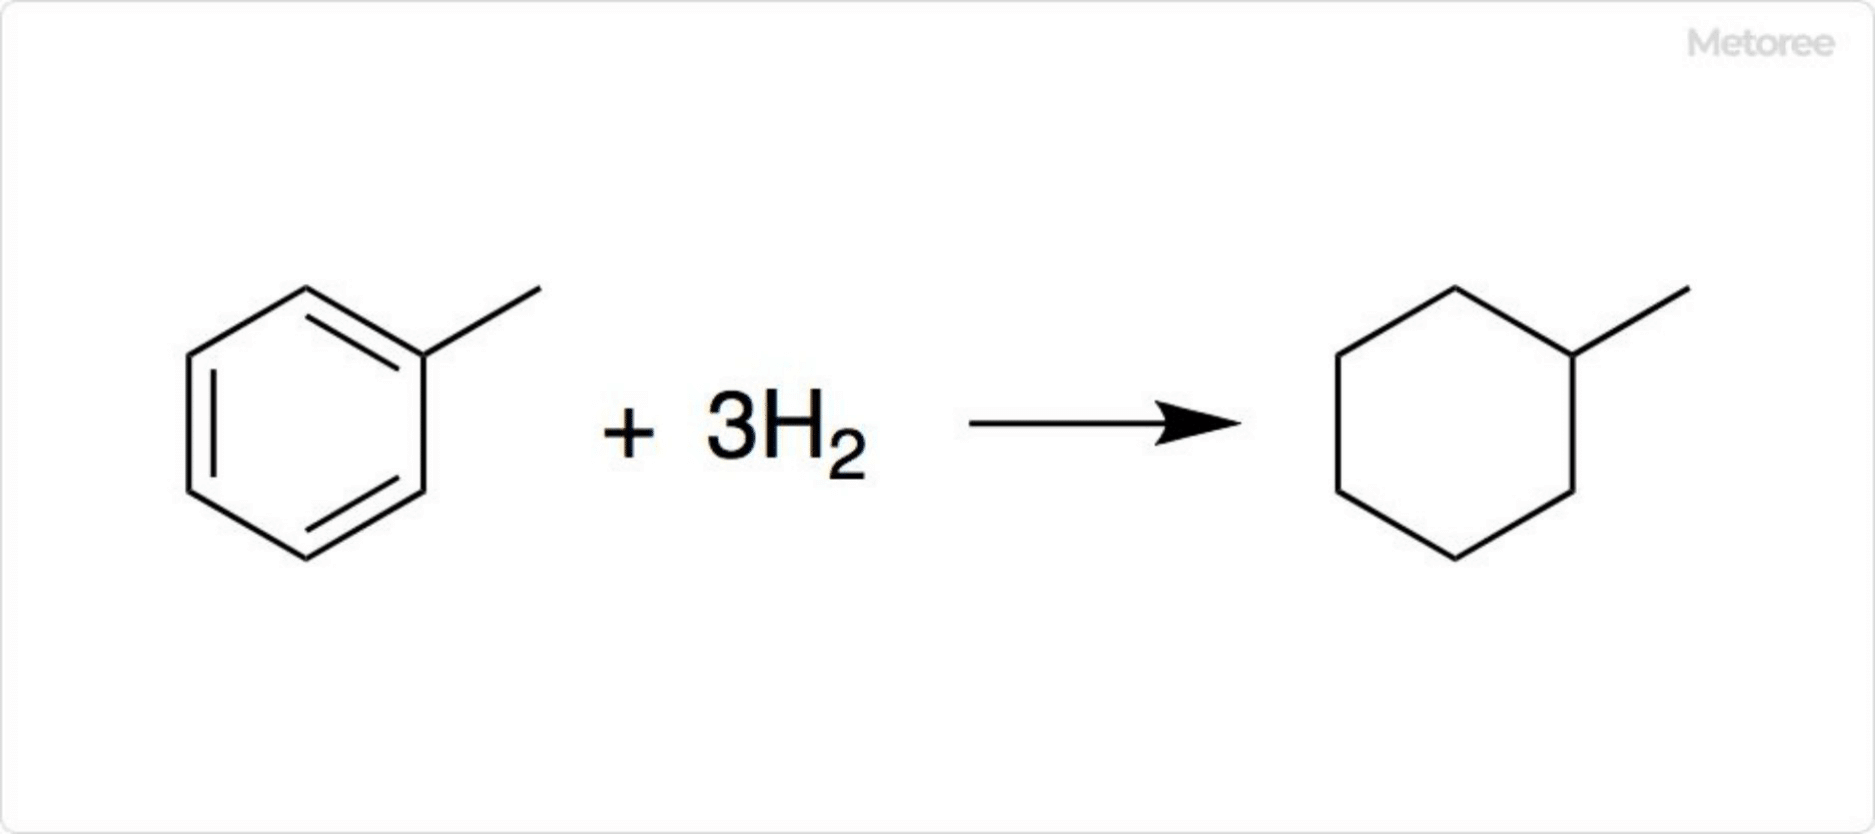 Figure 3. Mechanism of hydrogen storage in methylcyclohexane